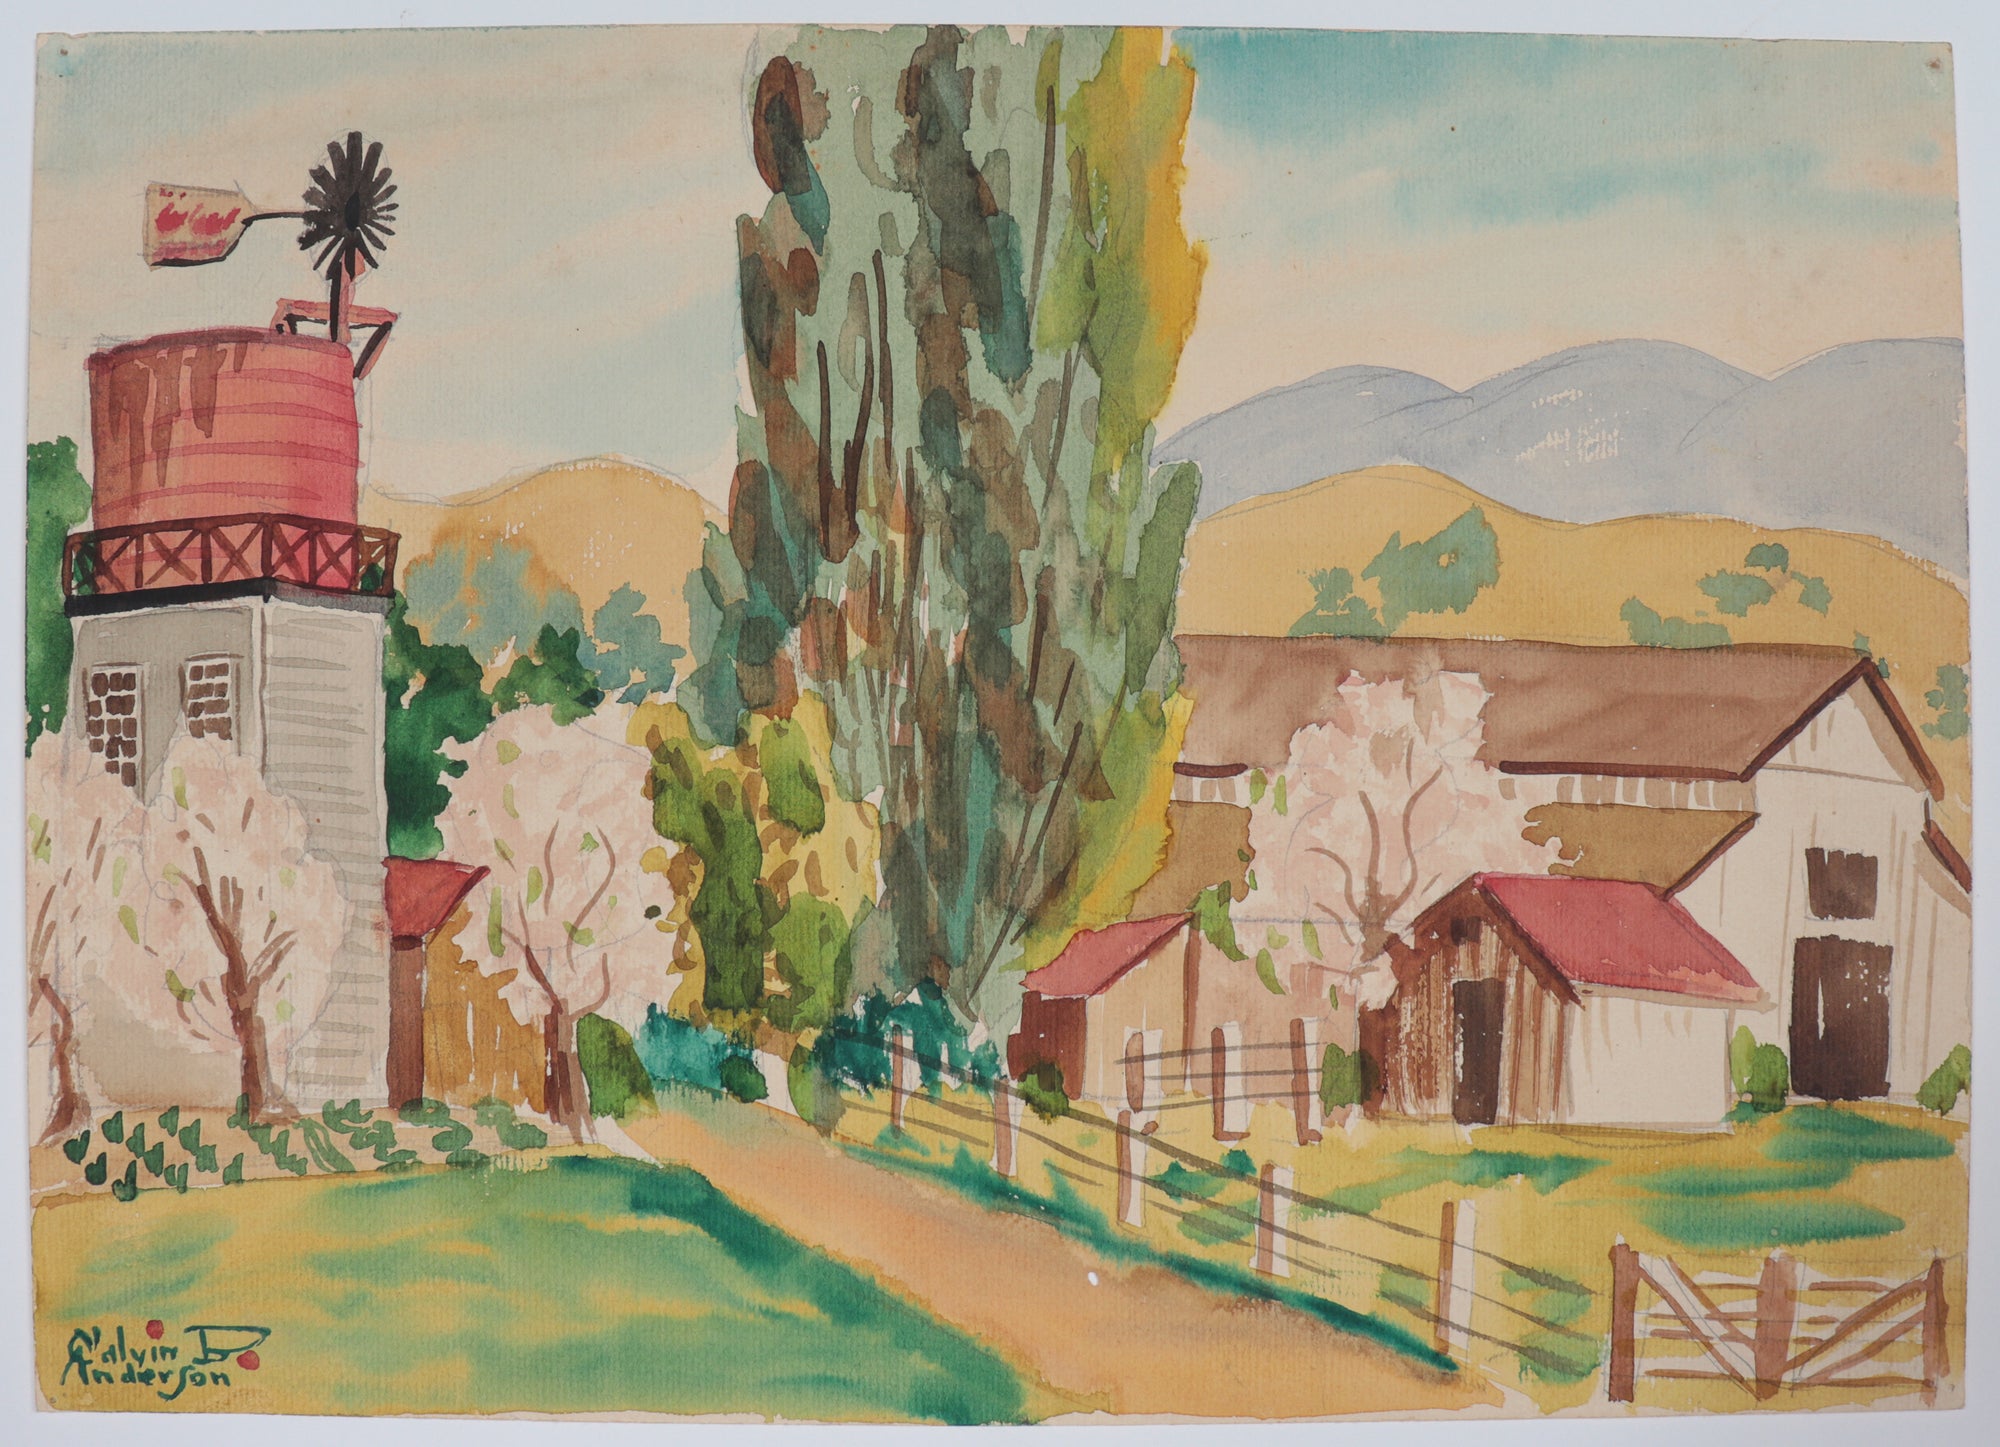 Idyllic Farm Scene <br>1942 Watercolor <br><br>#C4573